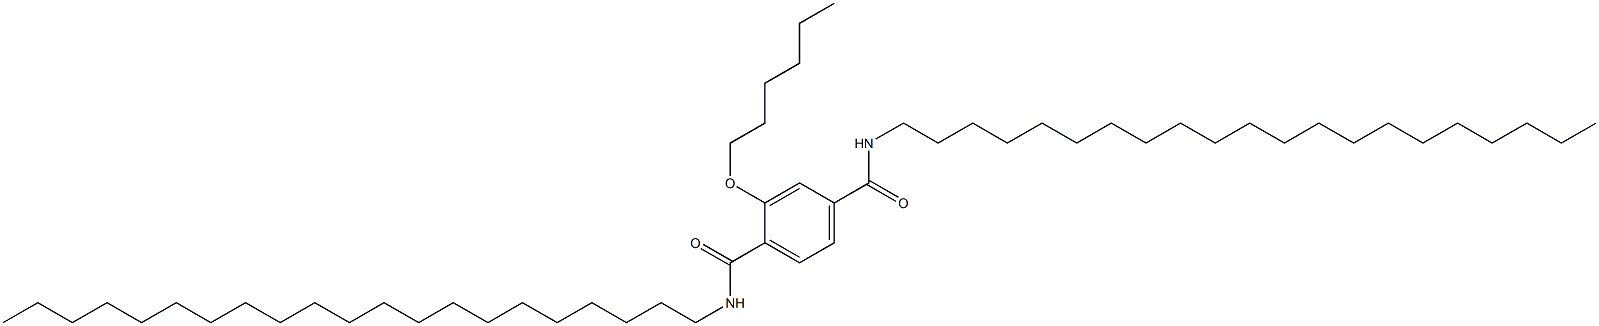 2-(Hexyloxy)-N,N'-dihenicosylterephthalamide|